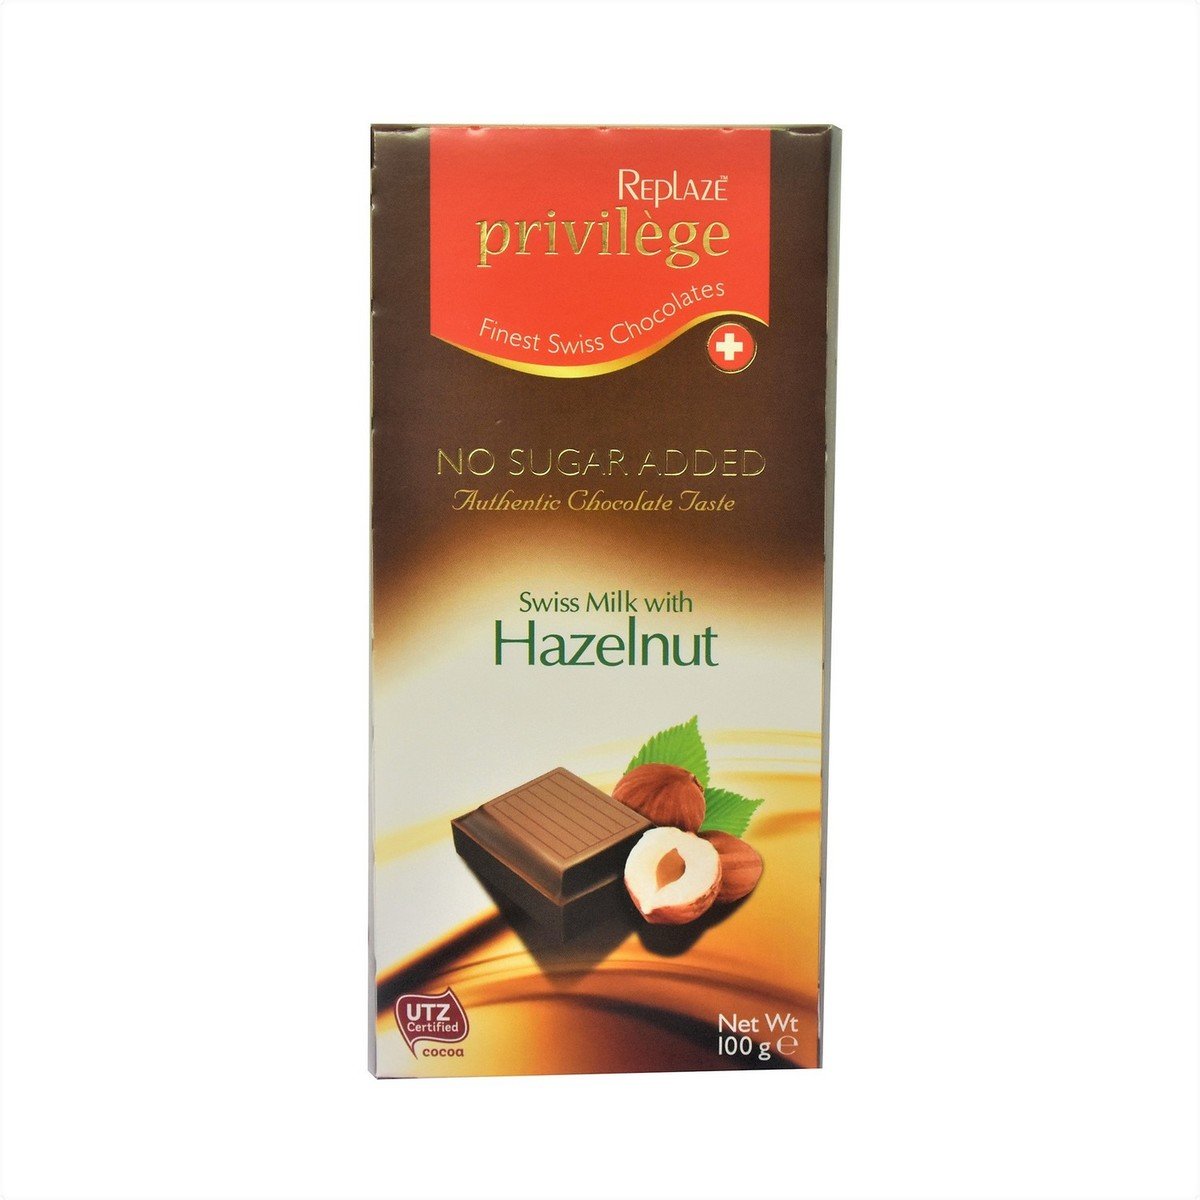 Replaze Privilege Swiss Milk with Hazelnut Chocolate 100 g